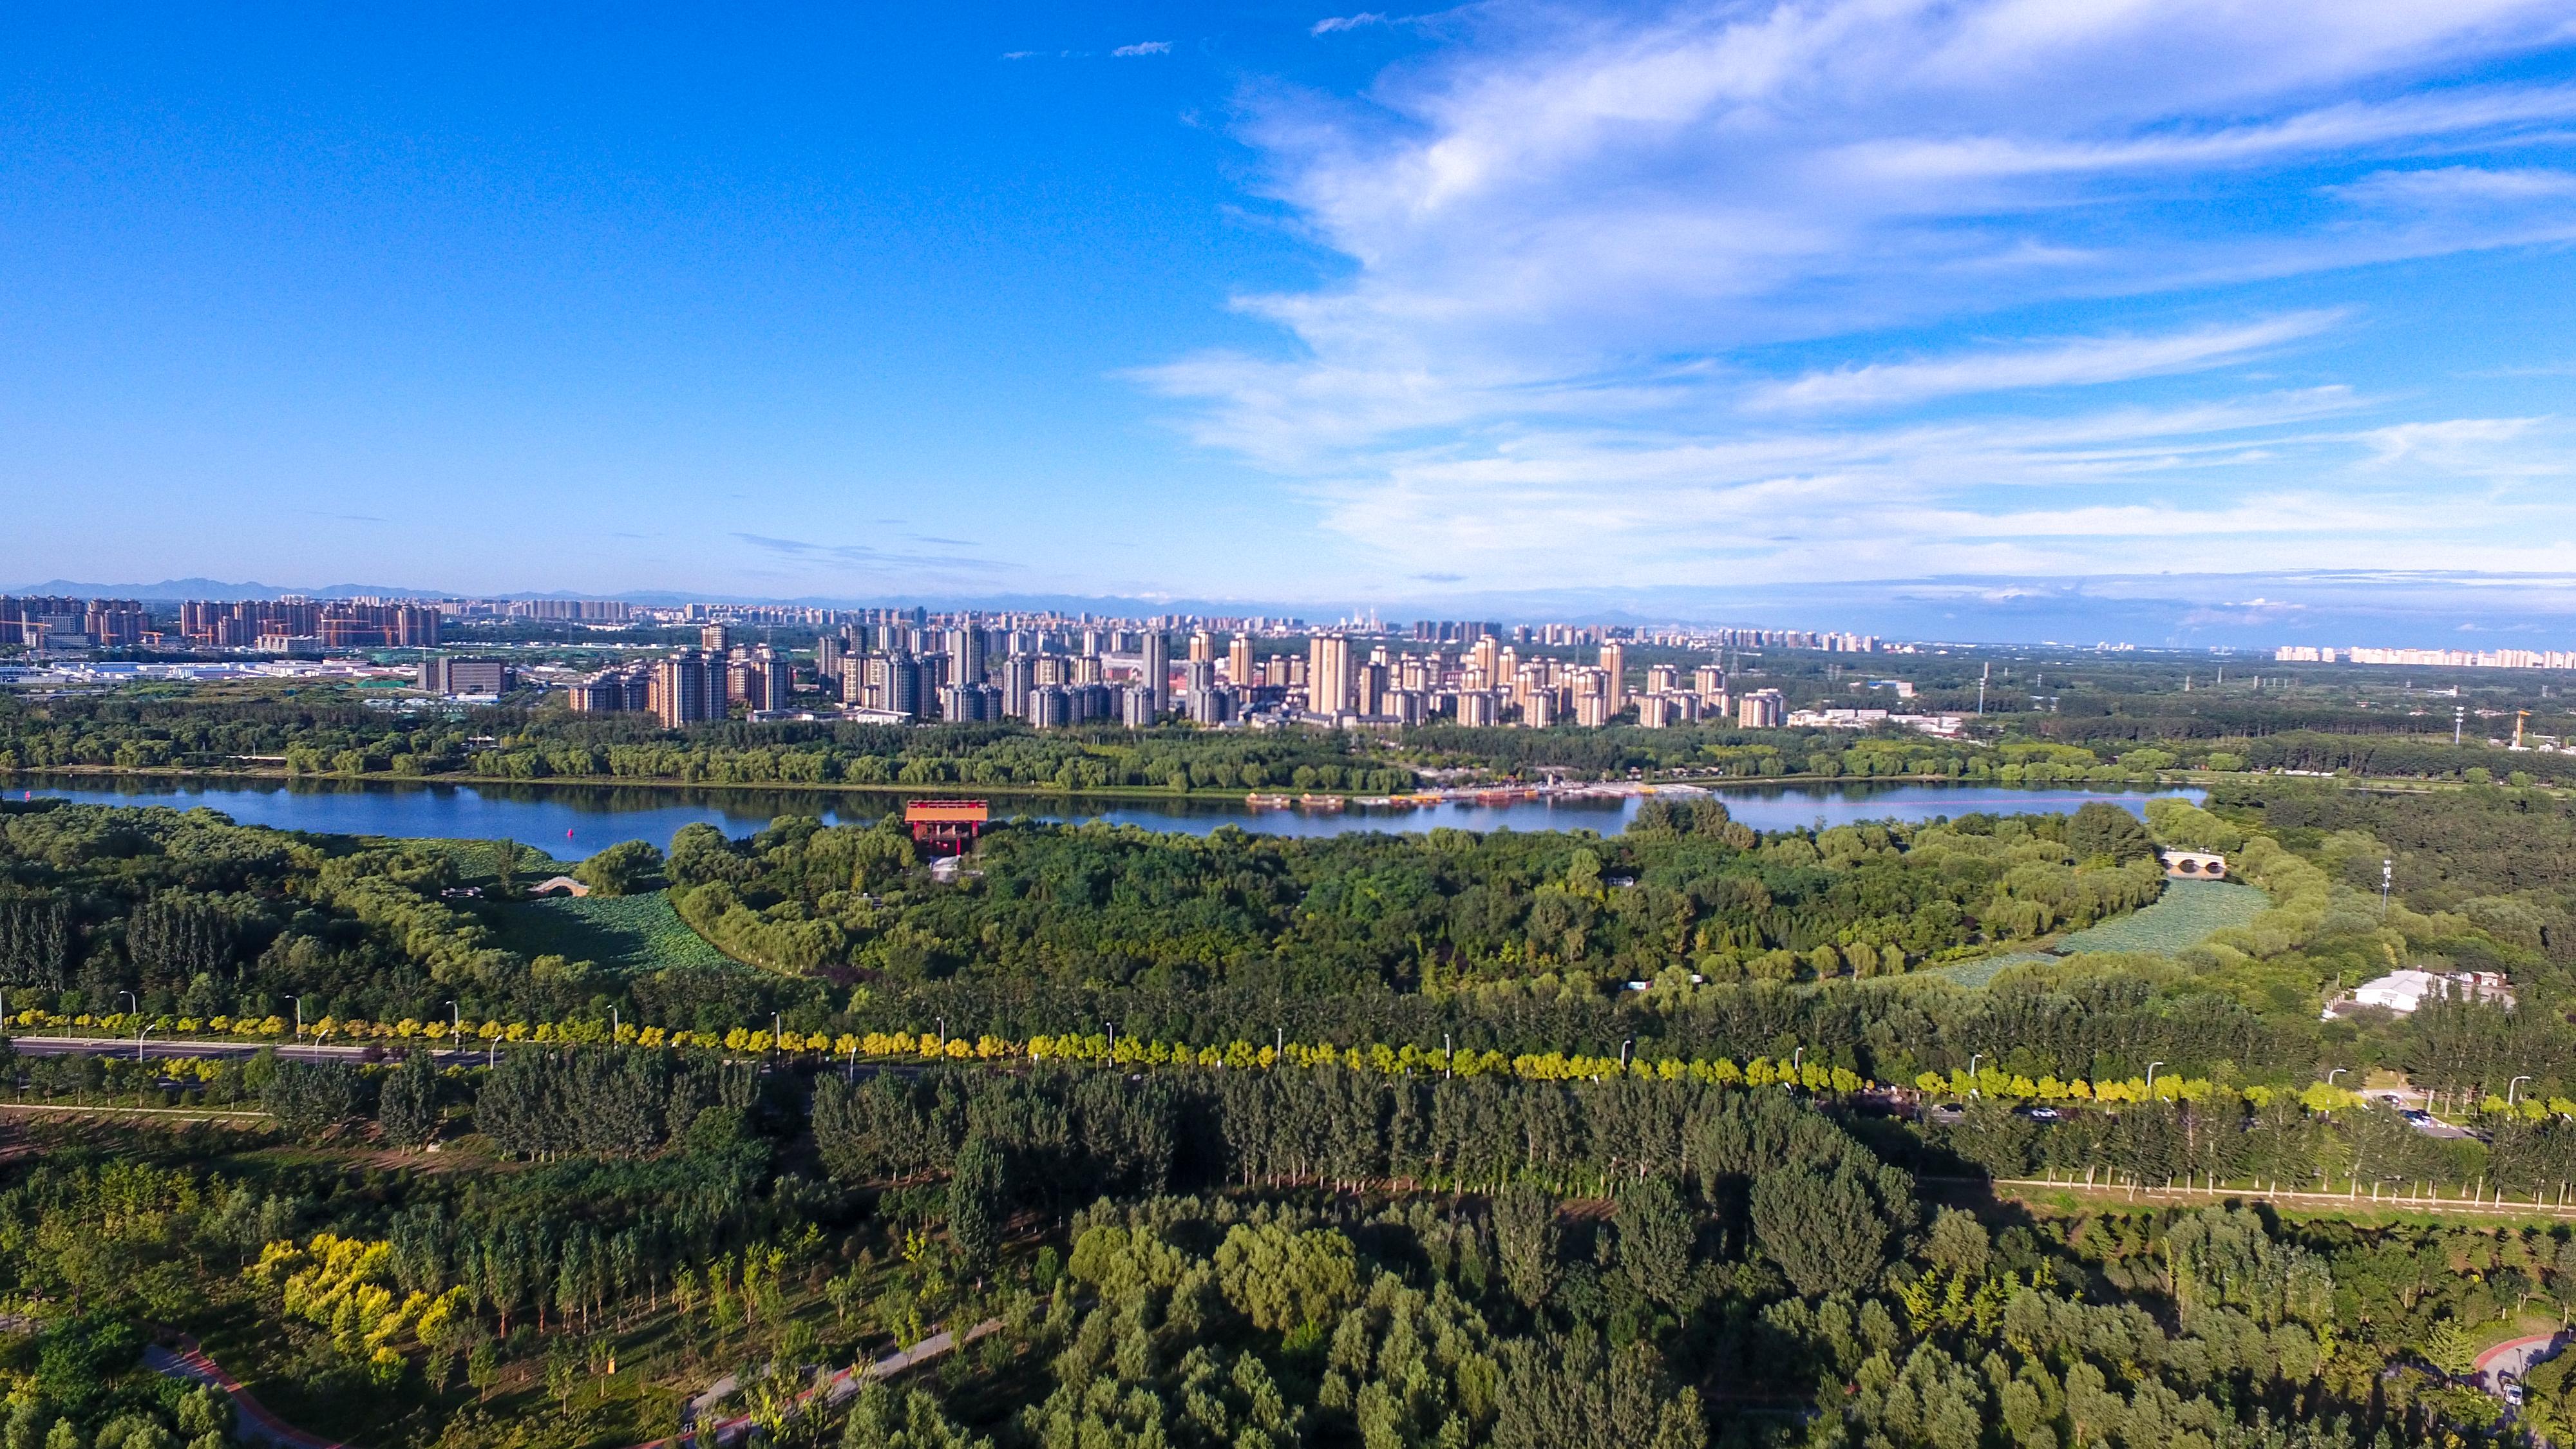 打通25公里游线 北京(通州)大运河文化旅游景区构建通州金名片